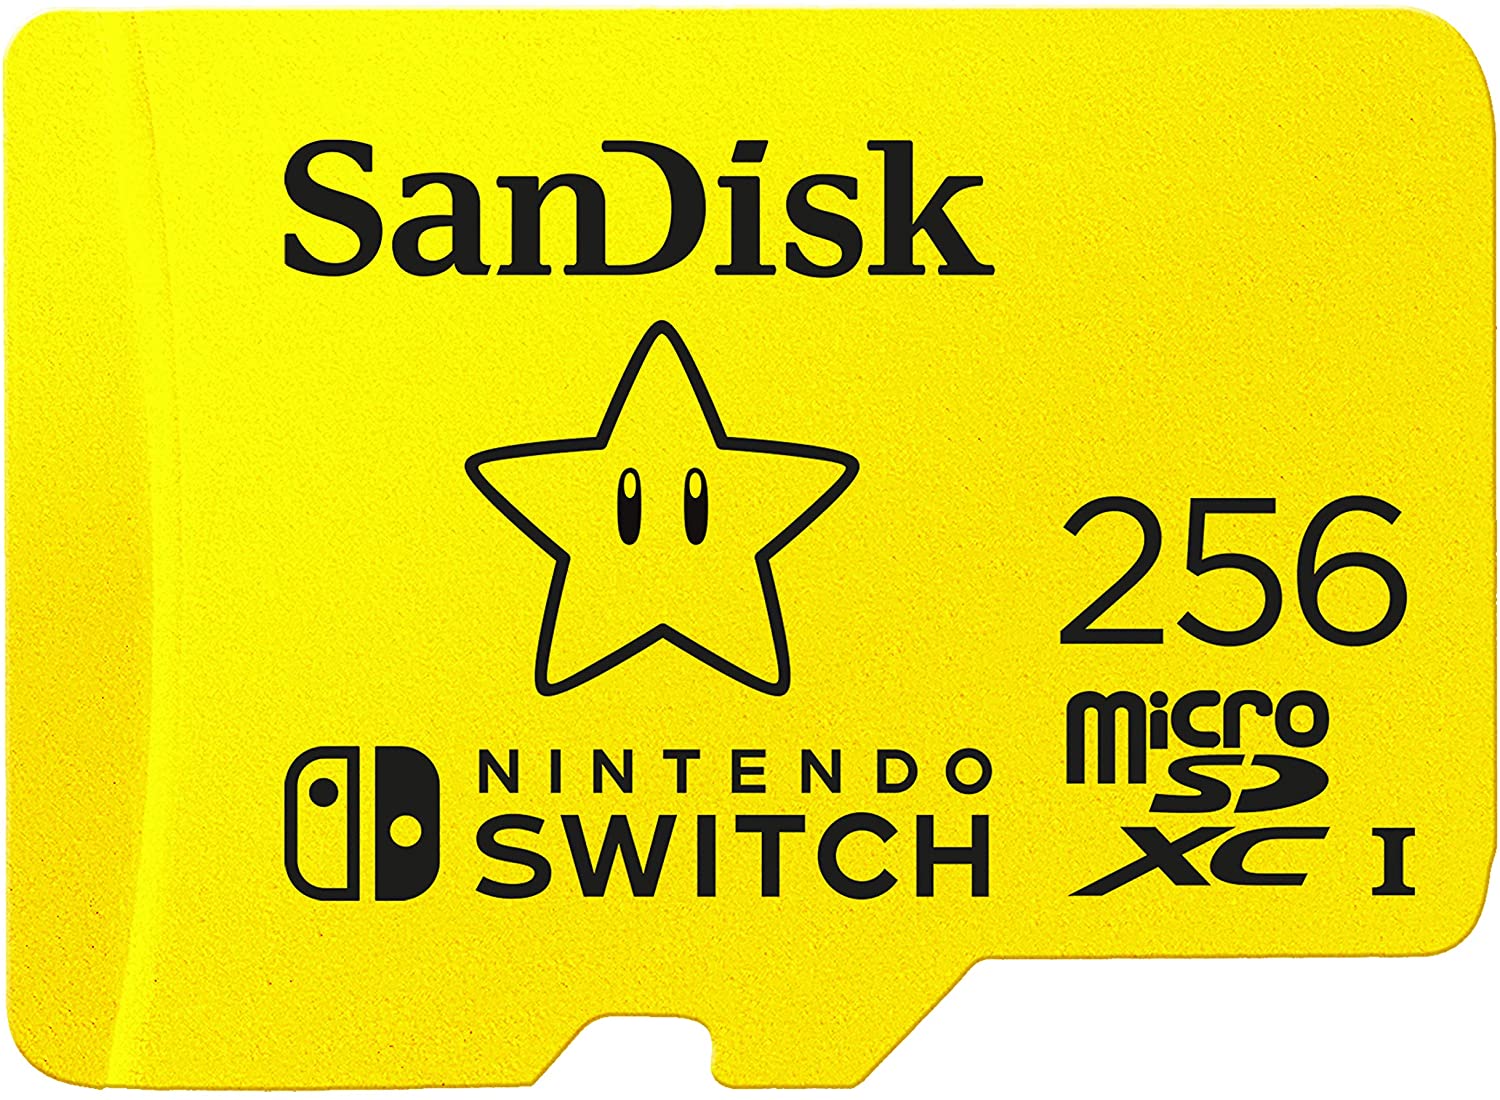 SanDisk microSD versione Super Mario